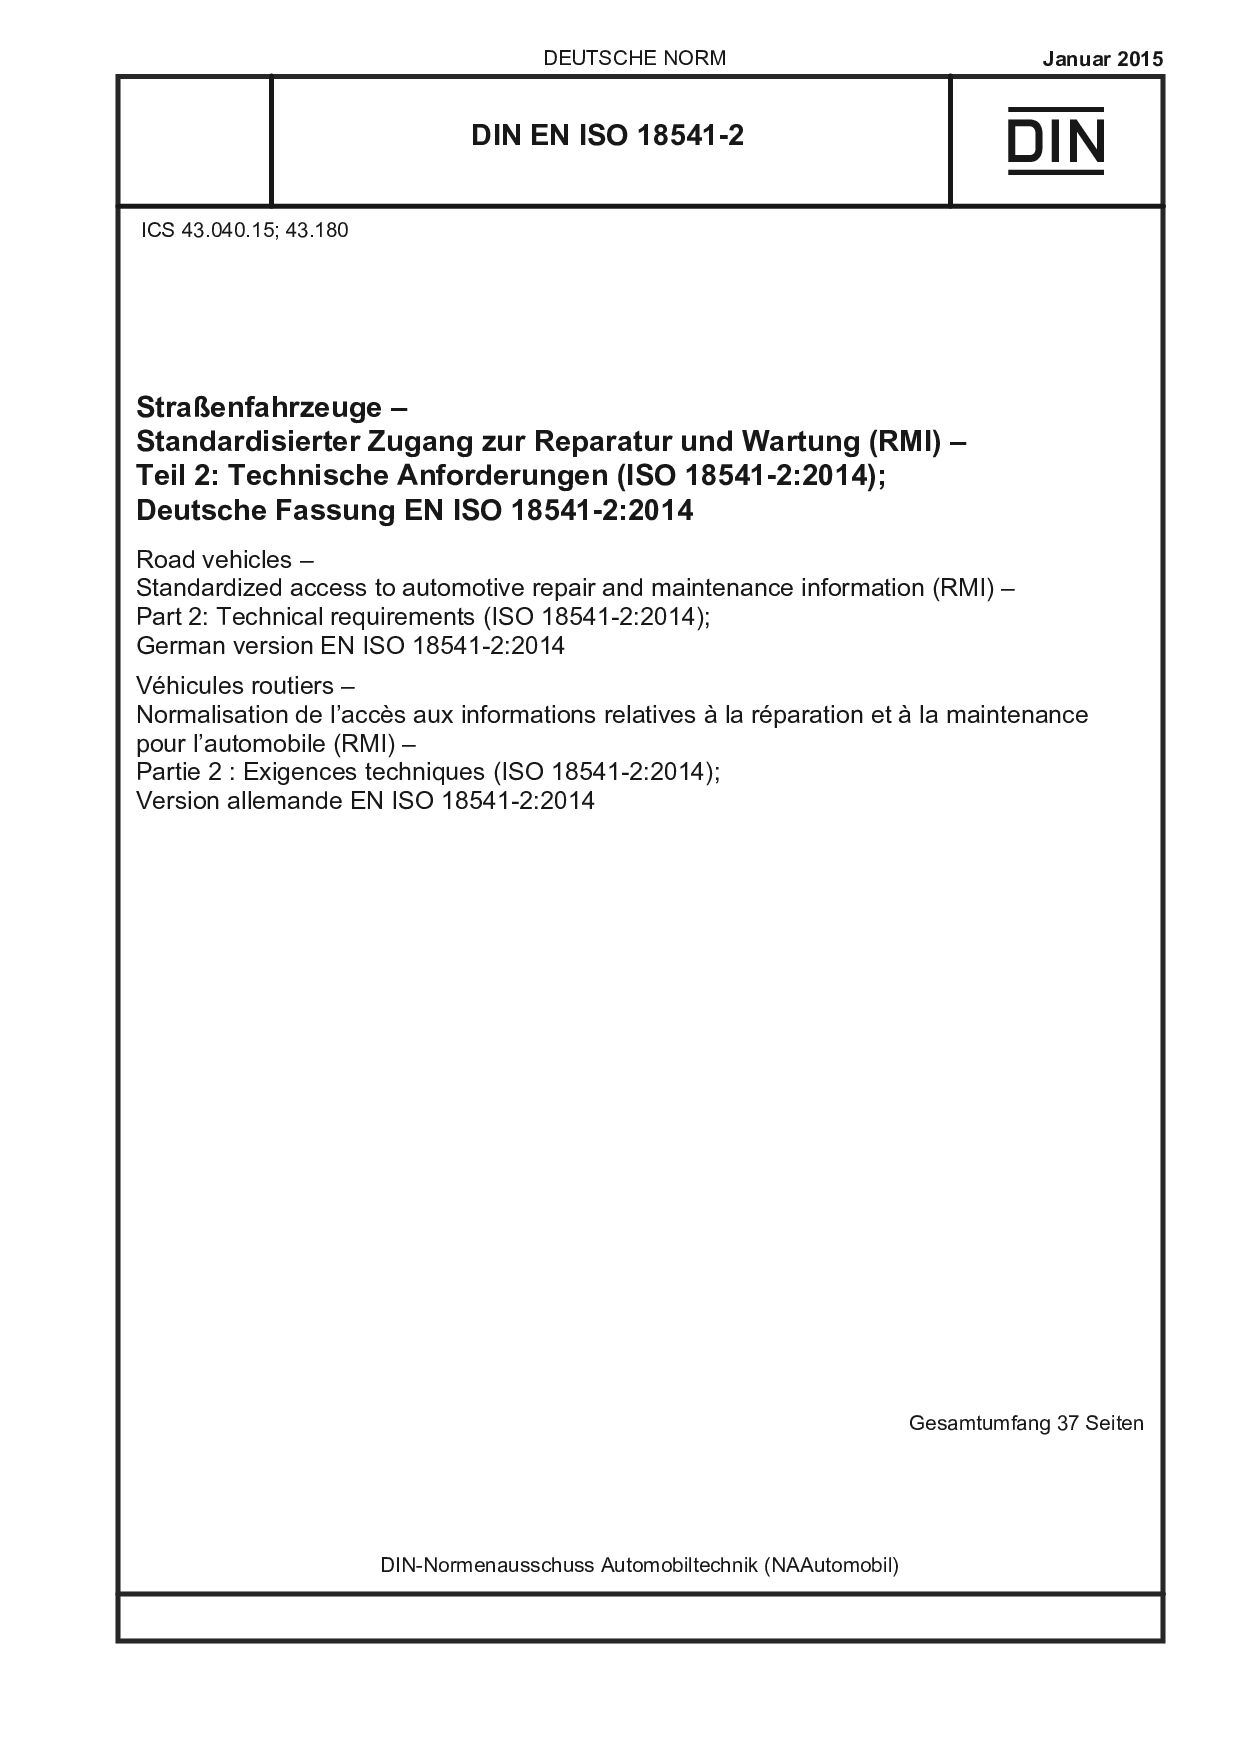 DIN EN ISO 18541-2:2015封面图